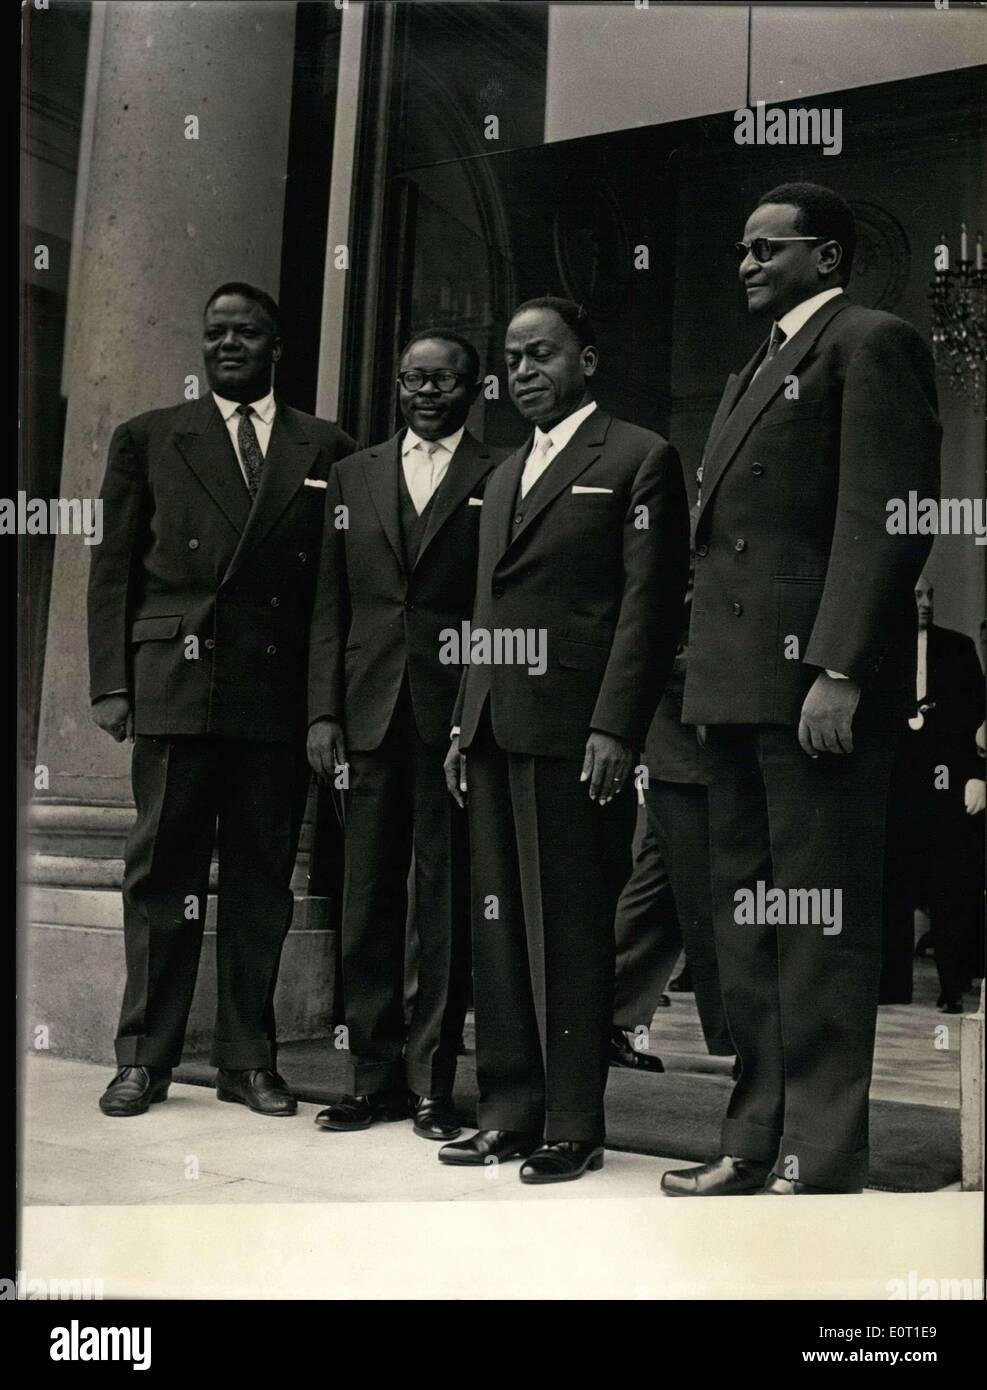 Giugno 25, 1960 - ricevuto all'Elysee Palace dal Generale de Gaulle, i capi dell'entente chiedono l'indipendenza in agosto. Da sinistra a destra: il sig. Hubert Maga (Dahomey); Yameogo (Haute-Volta); Houphouet-Boigny (Costa d Avorio); e Hamani Diori (Nigeria) sono ritratte lasciando l'Elysee Palace. Foto Stock